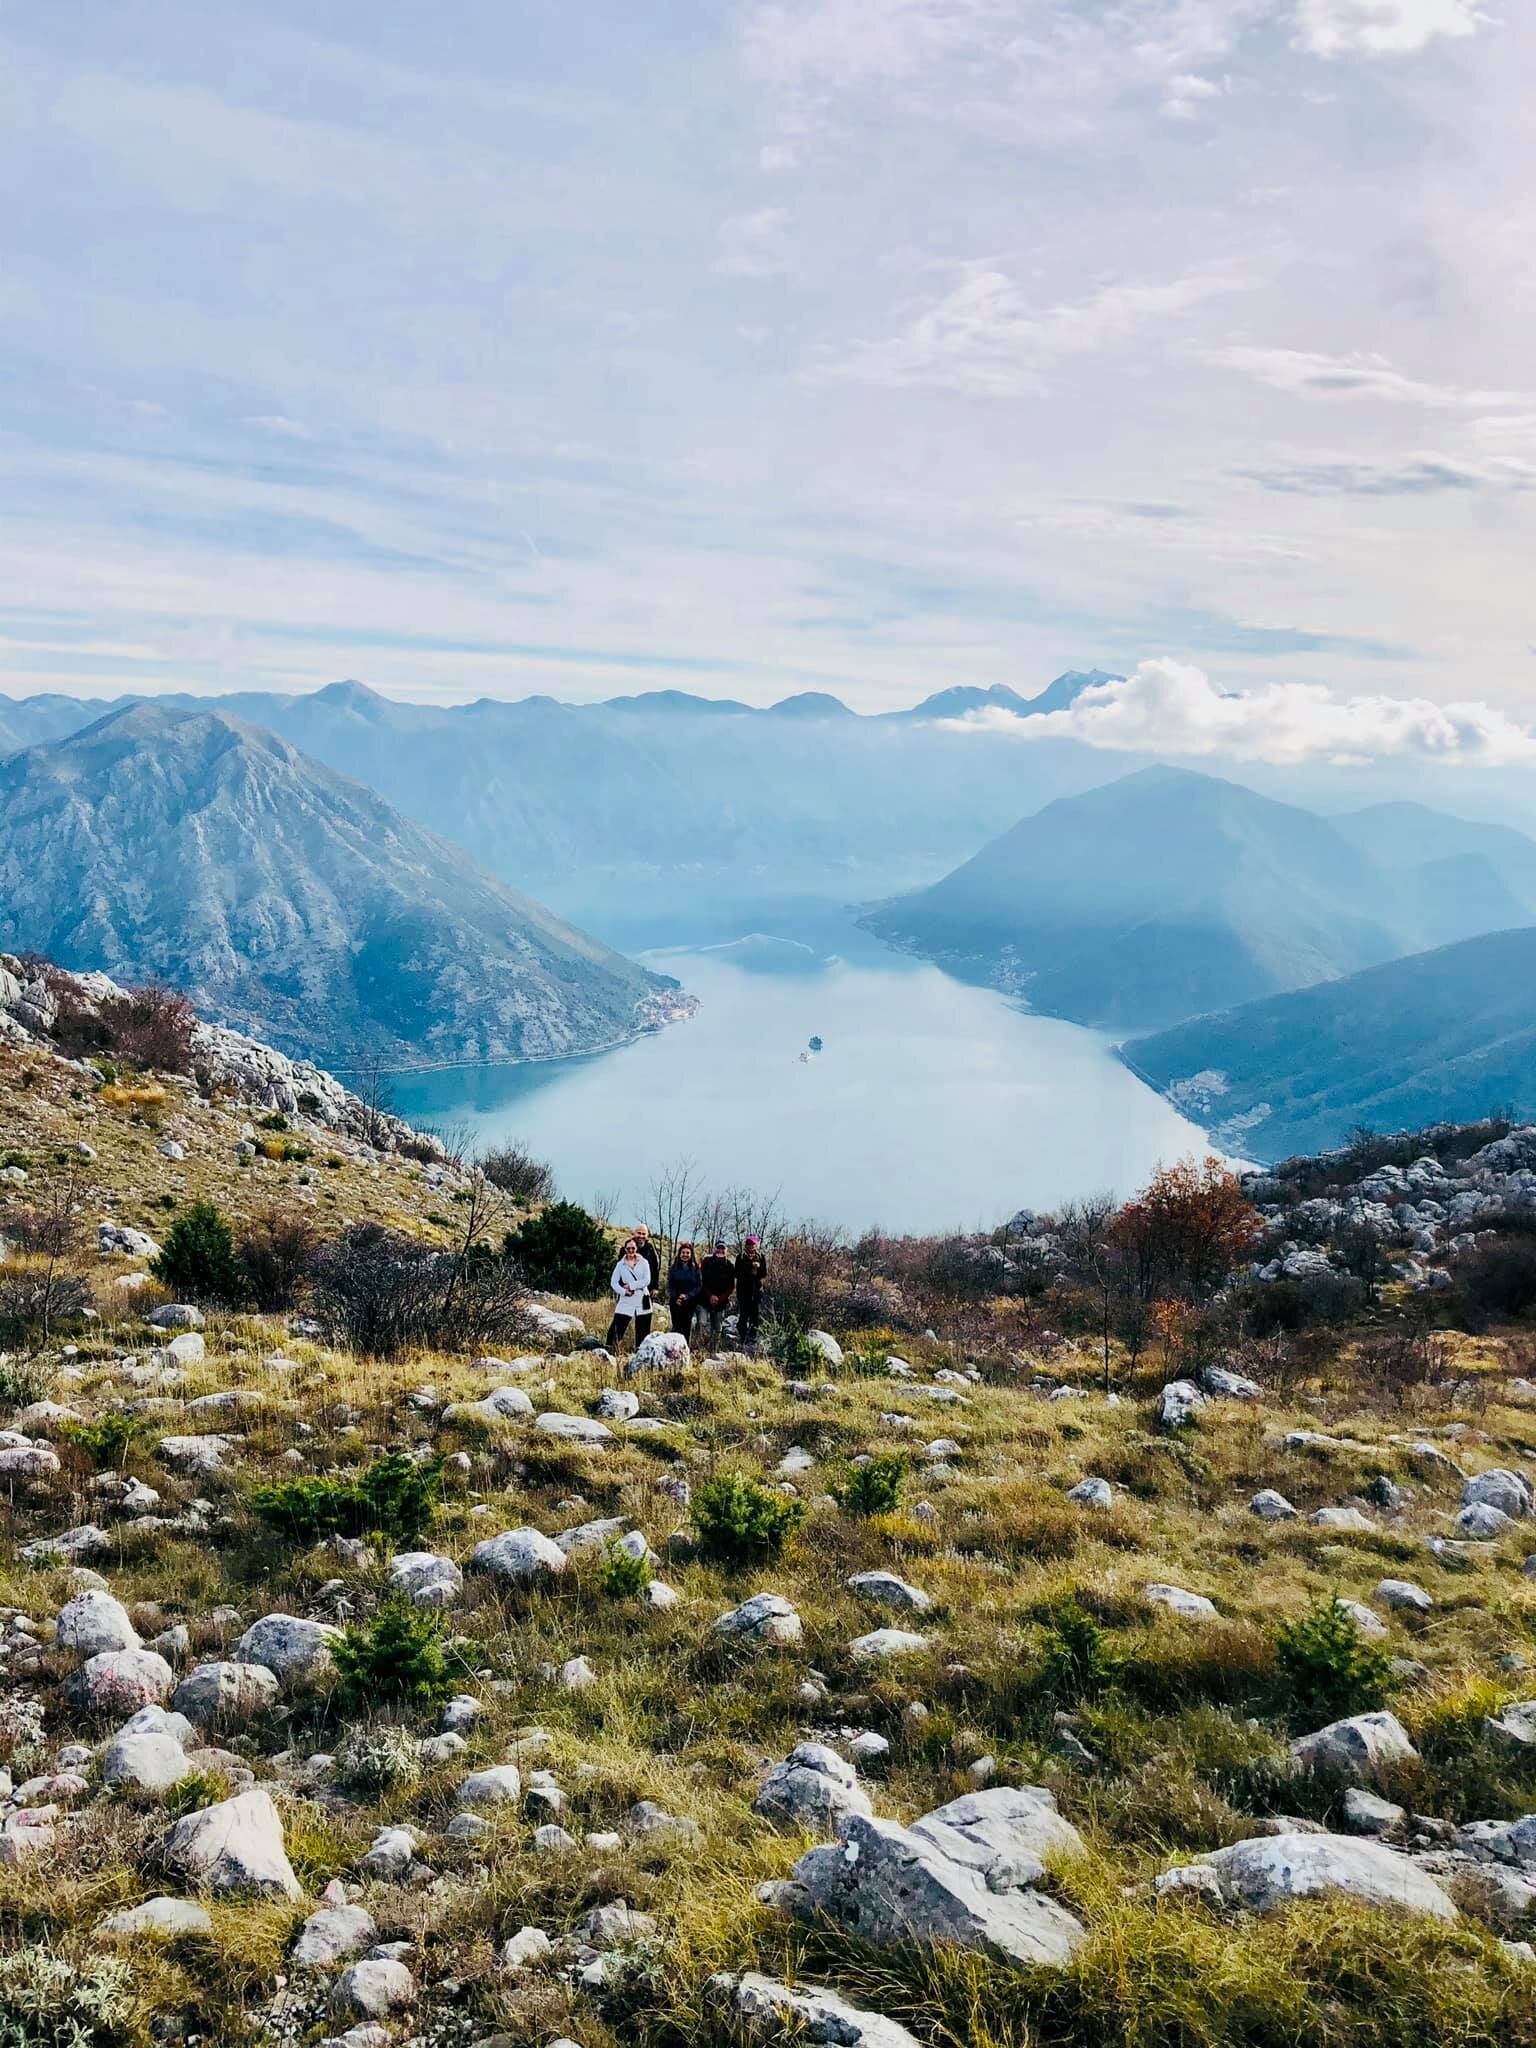 Yesterday’s beautiful hike in Herceg Novi, Montenegro4.jpg